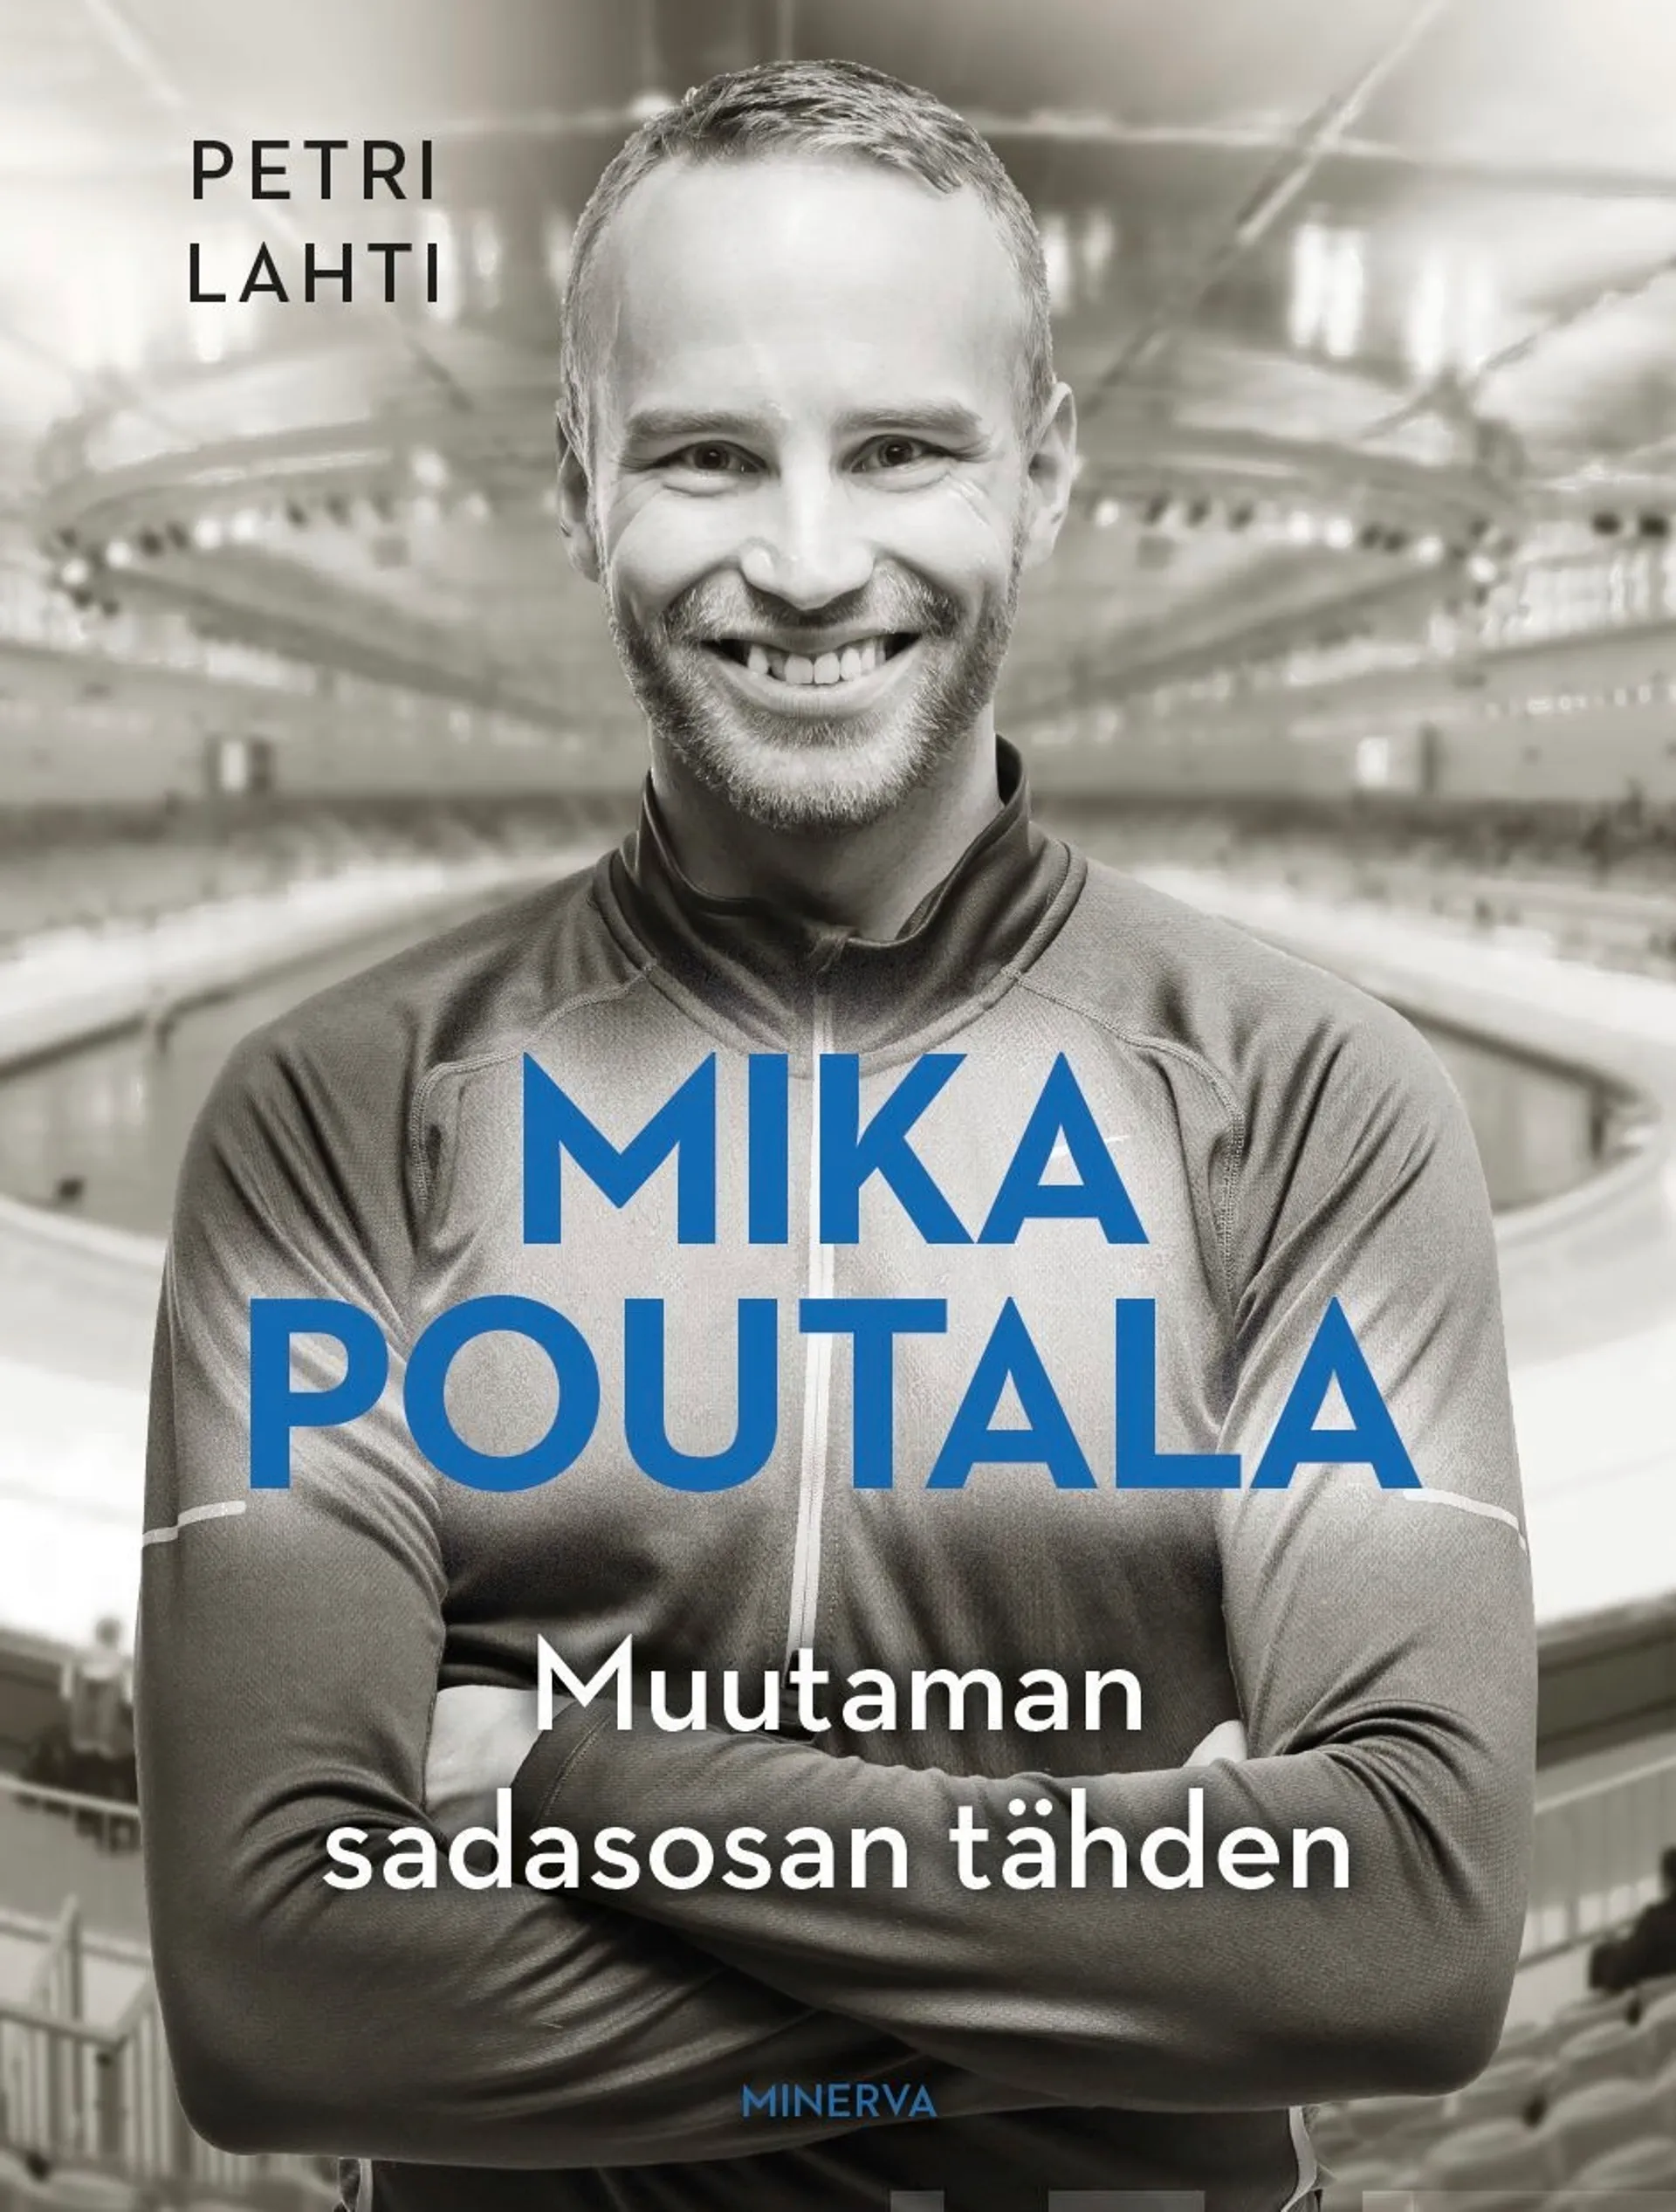 Lahti, Mika Poutala - Muutaman sadasosan tähden